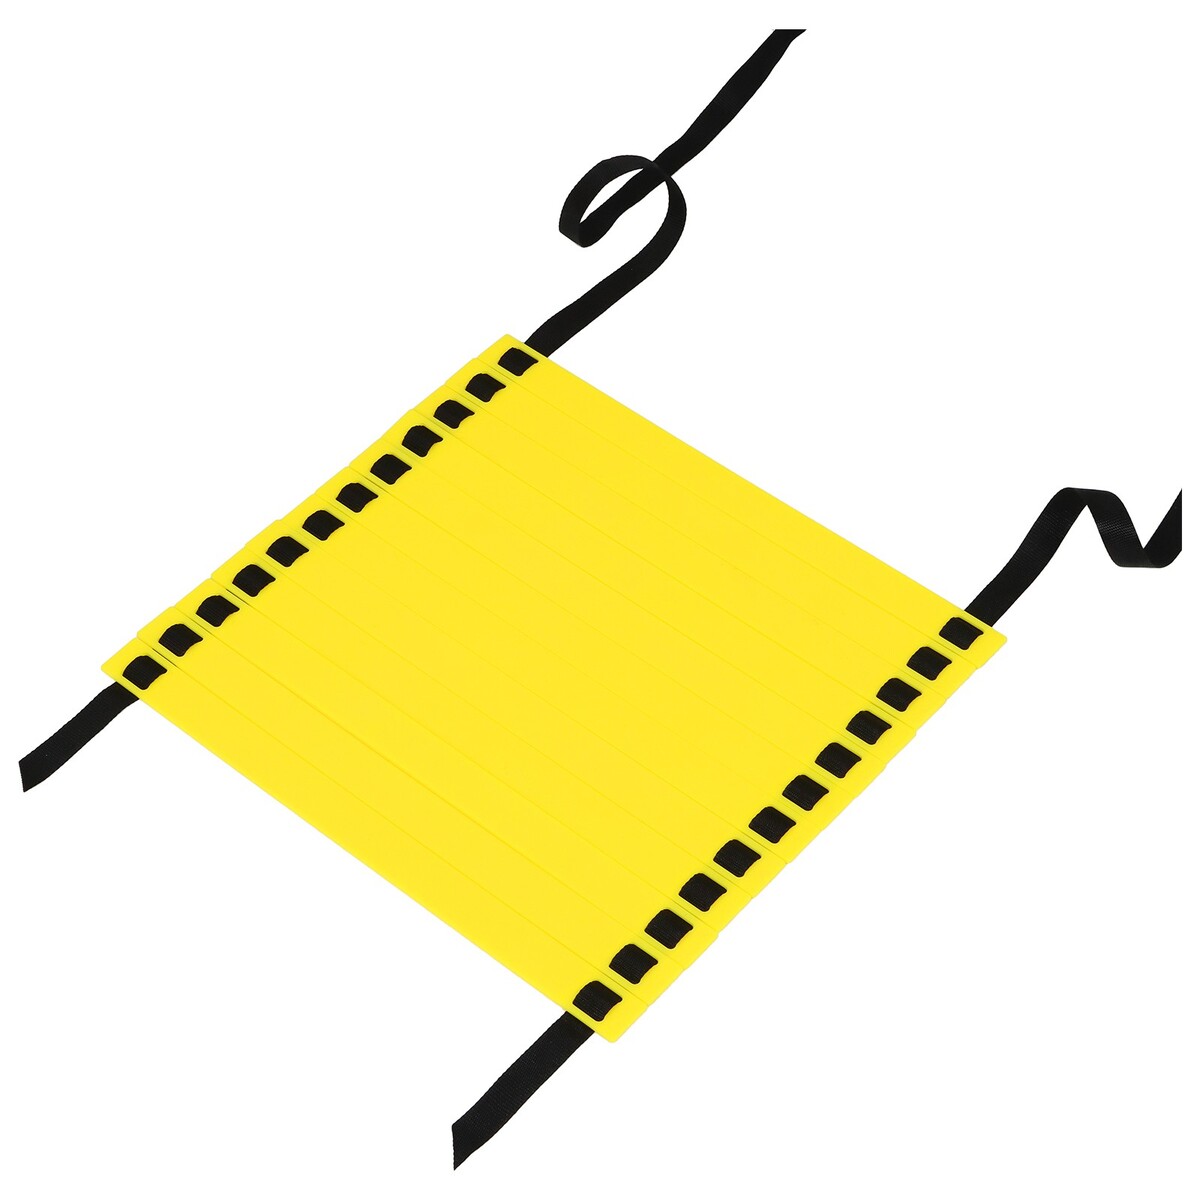 Координационная лестница onlytop, 6 м, толщина 4 мм, цвет желтый лестница сибин 38833 13 трехсекционная со стабилизатором 13 ступеней